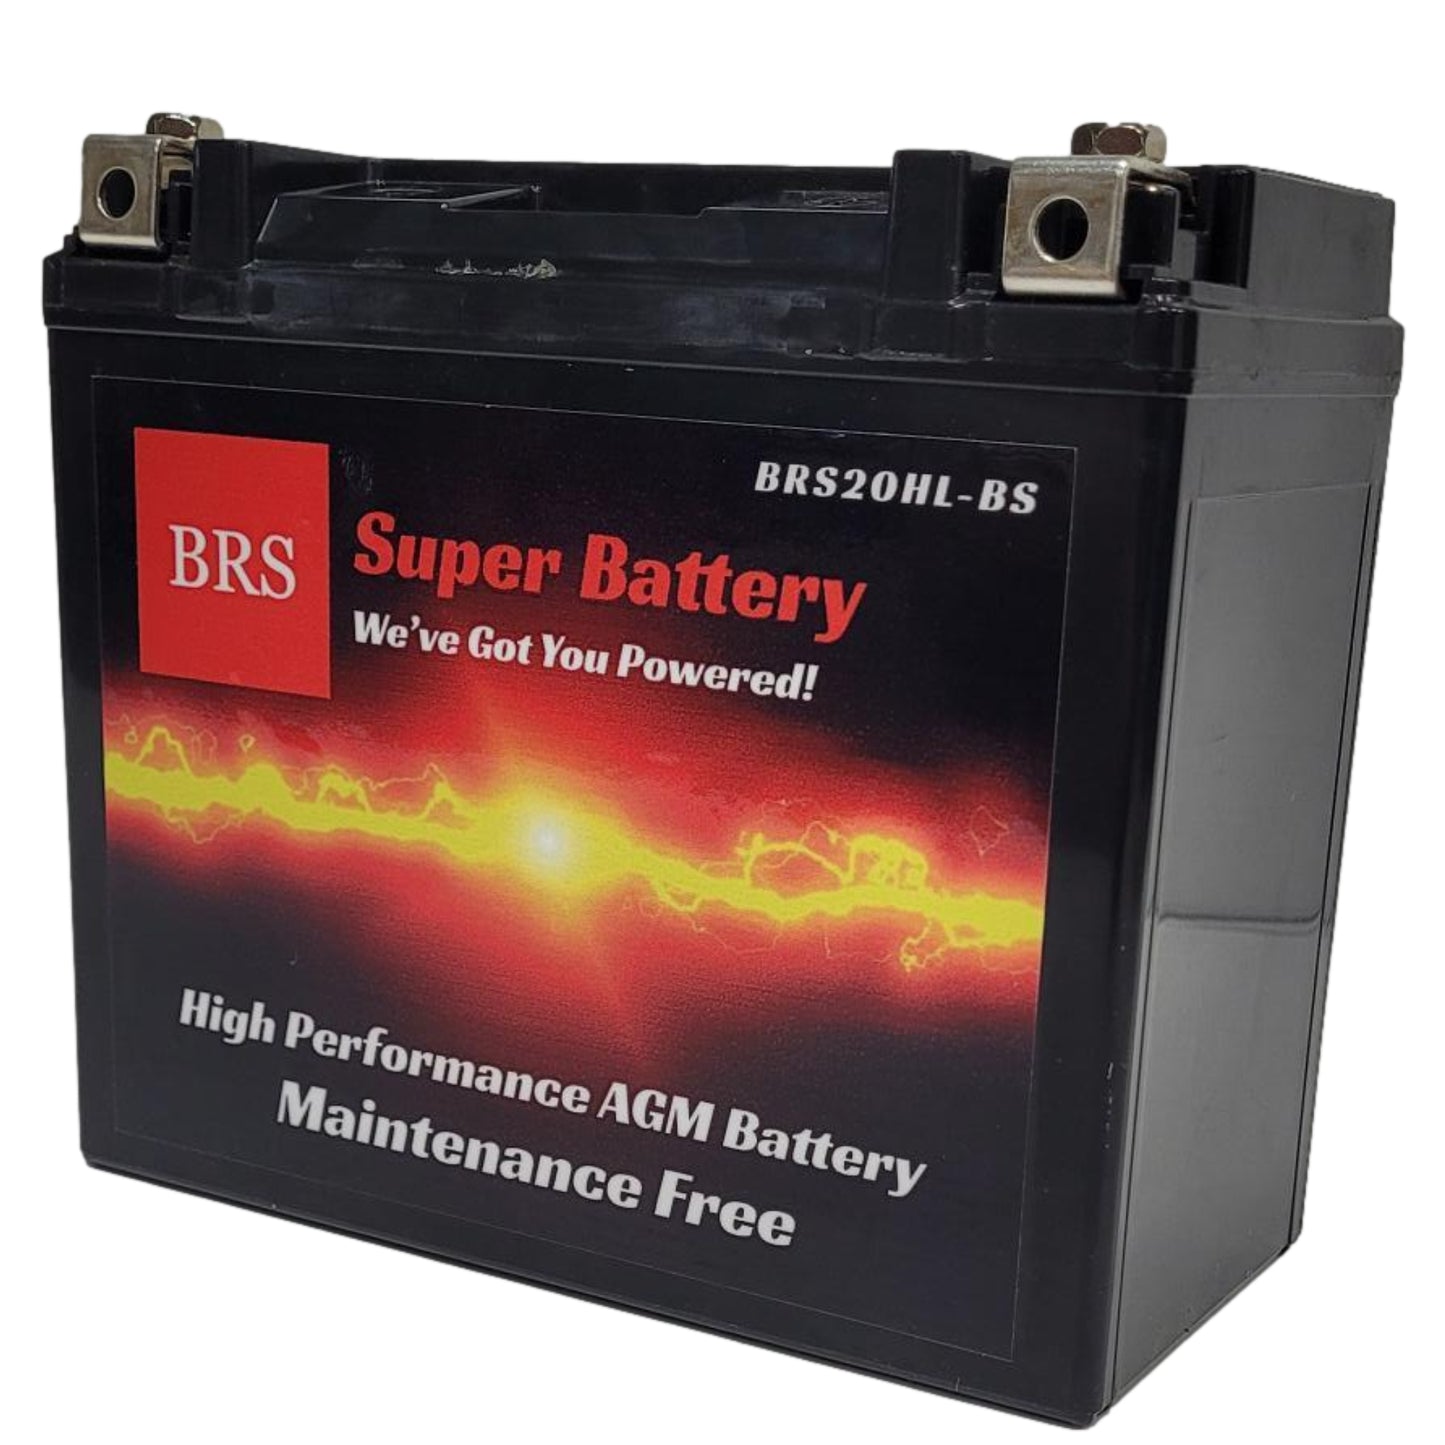 WPX20HL-FA Batterie de sports motorisés AGM 12V 20Ah 310CCA (activée en  usine) Batteries Expert